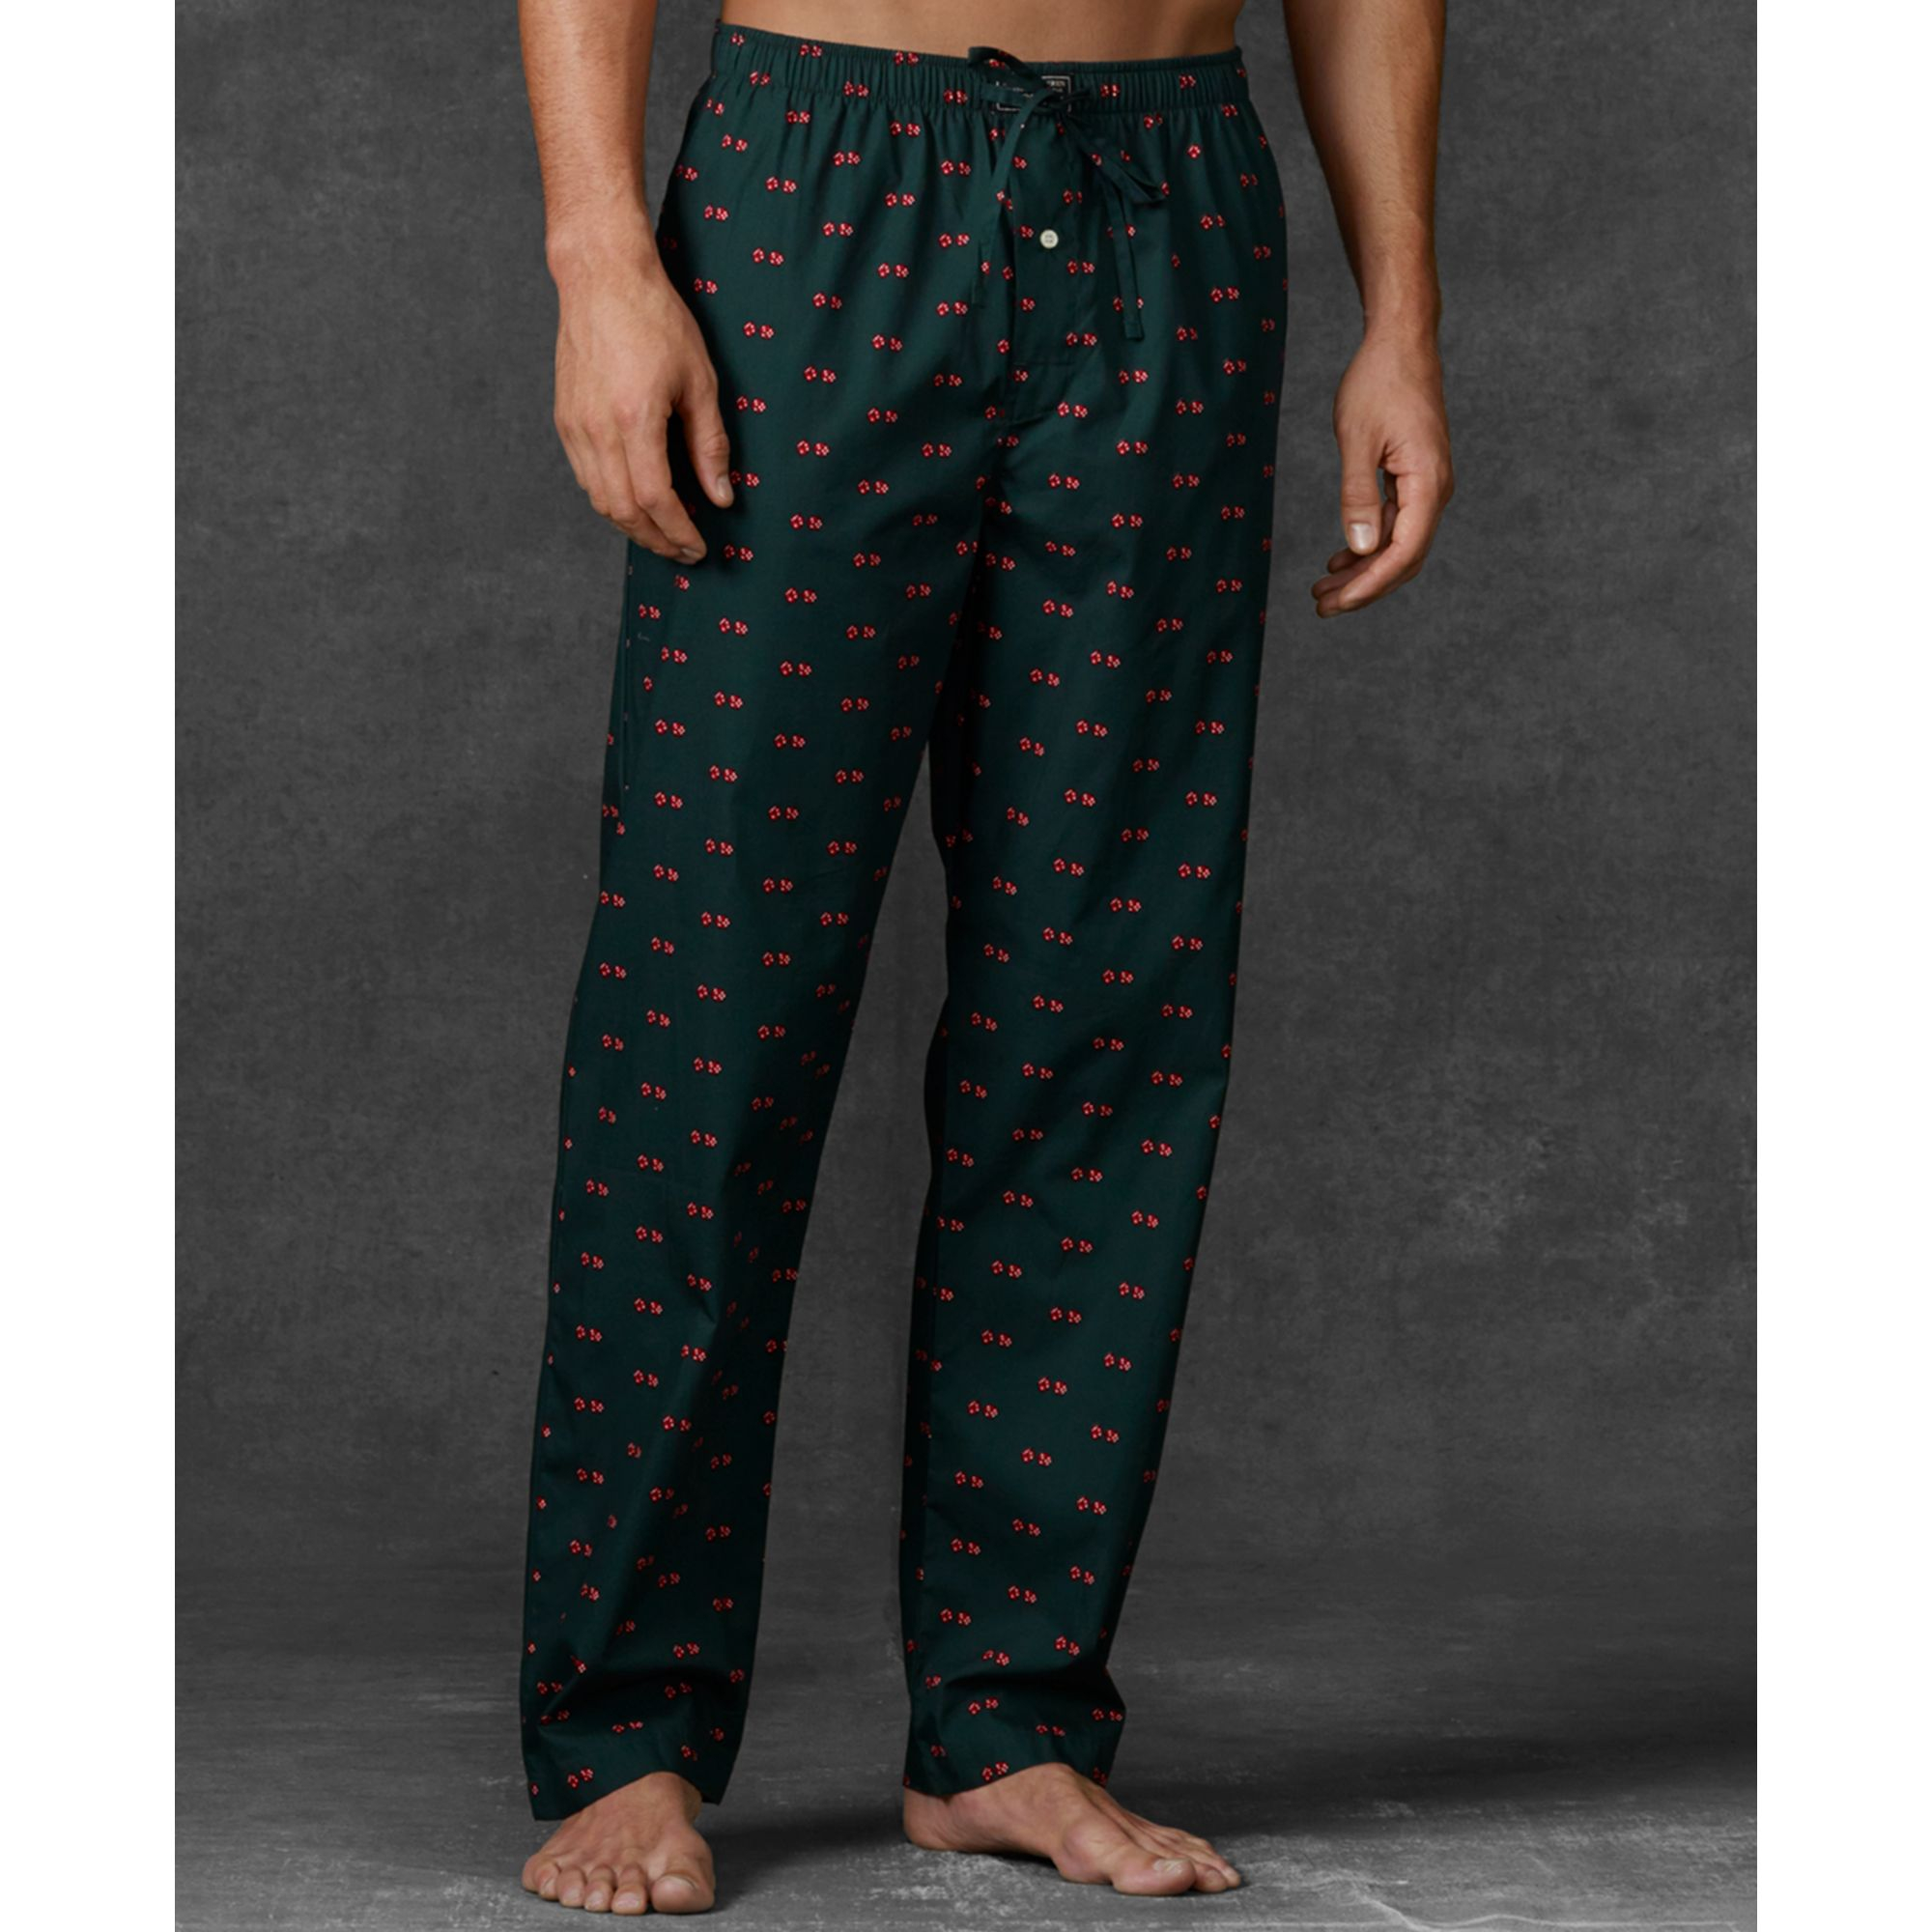 Lyst - Ralph lauren Novelty Print Woven Pajama Pants in Green for Men